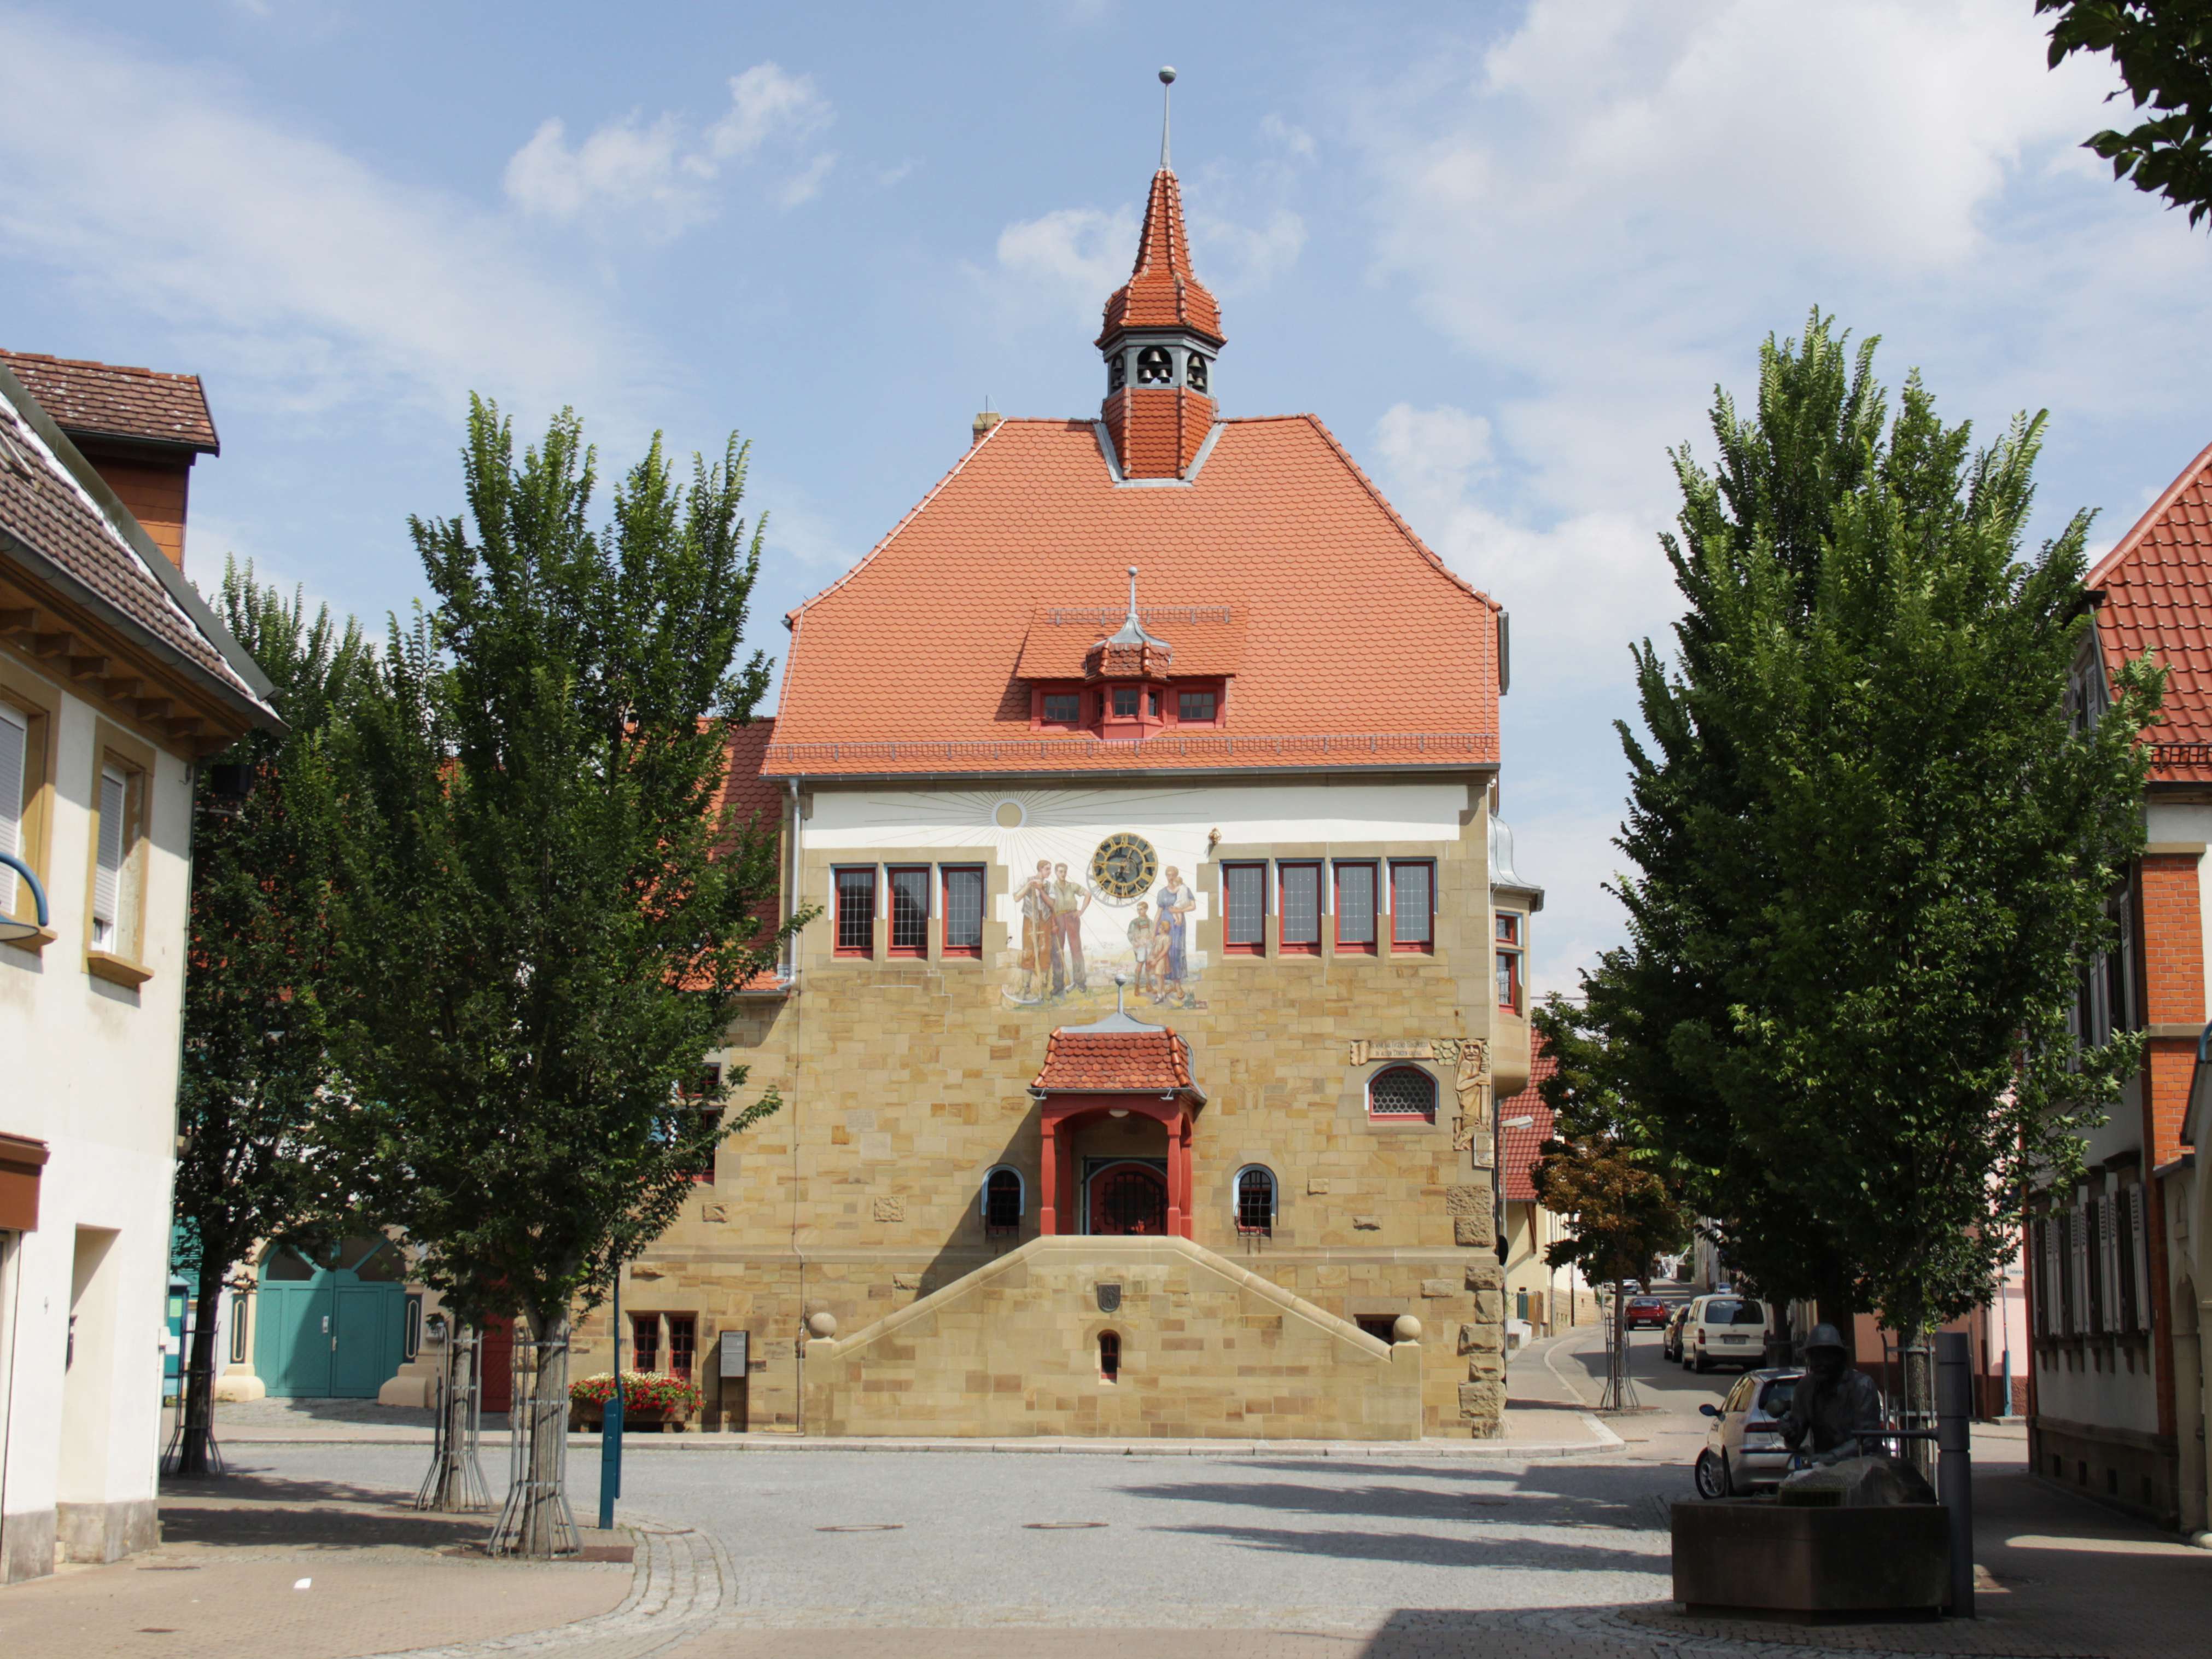  Rathaus Odenheim 